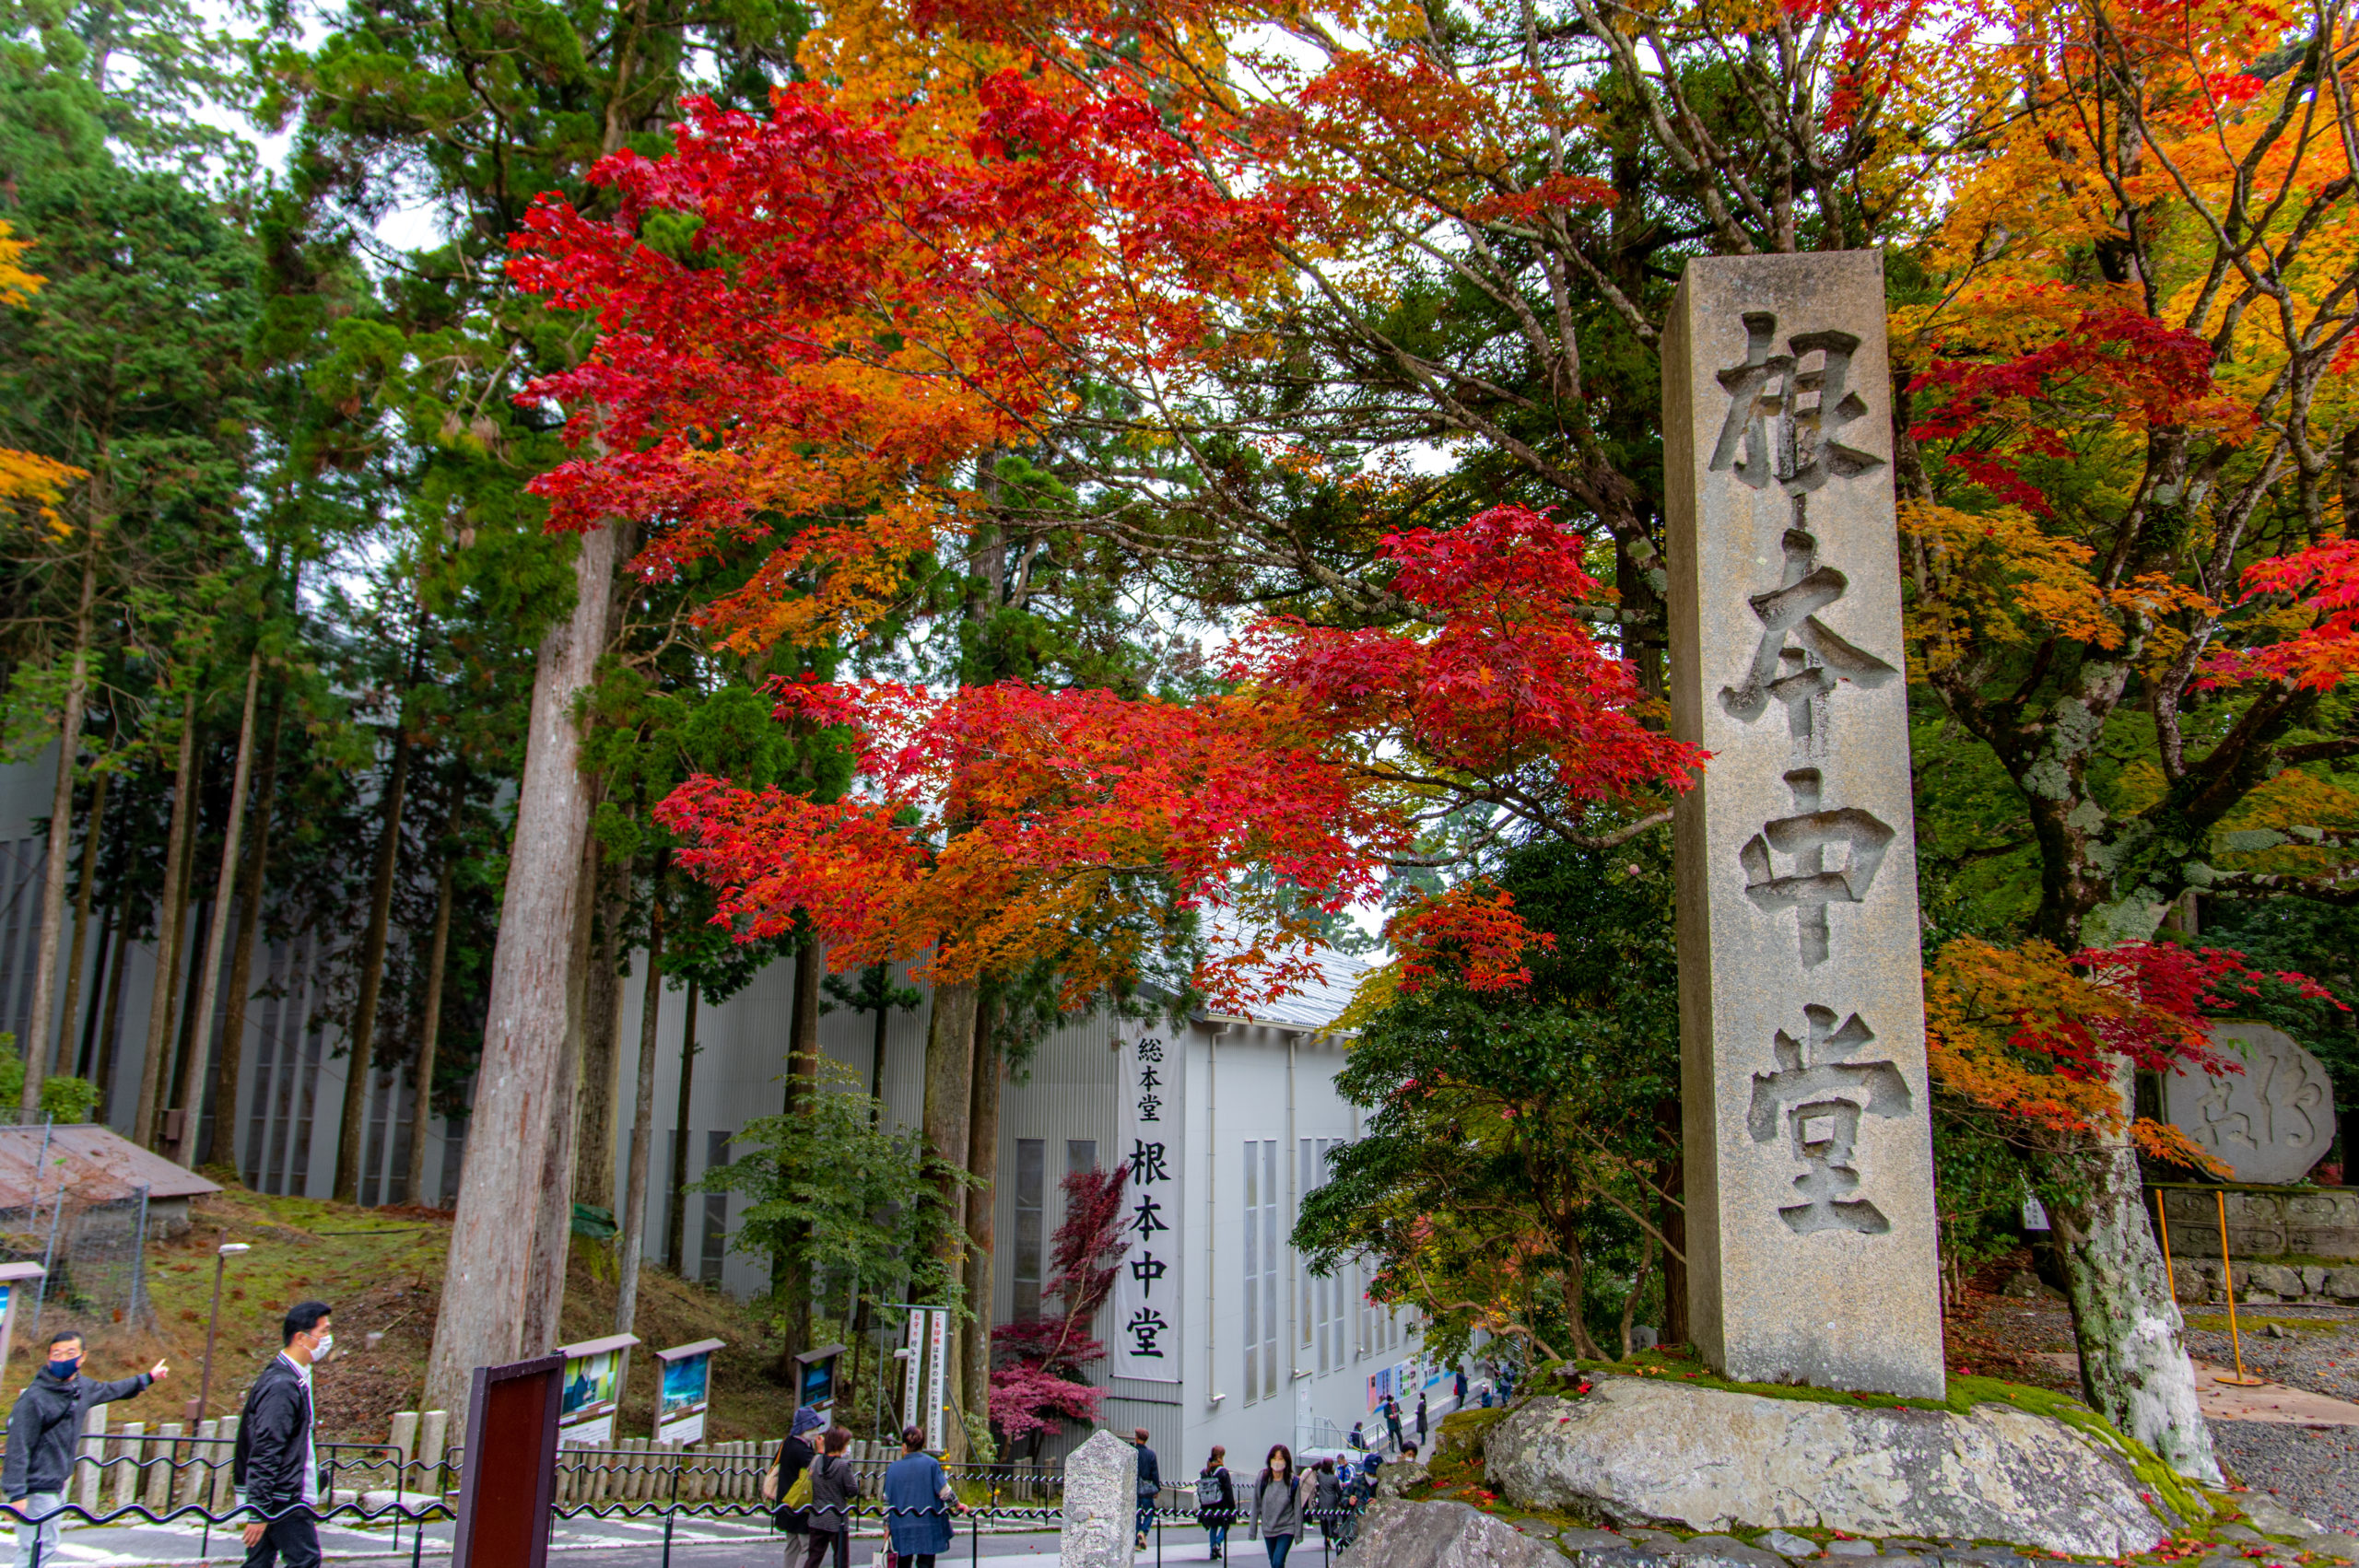 京都府と滋賀県の県境にある世界遺産への行き方を考えてみた。滋賀県の延暦寺への行き方。